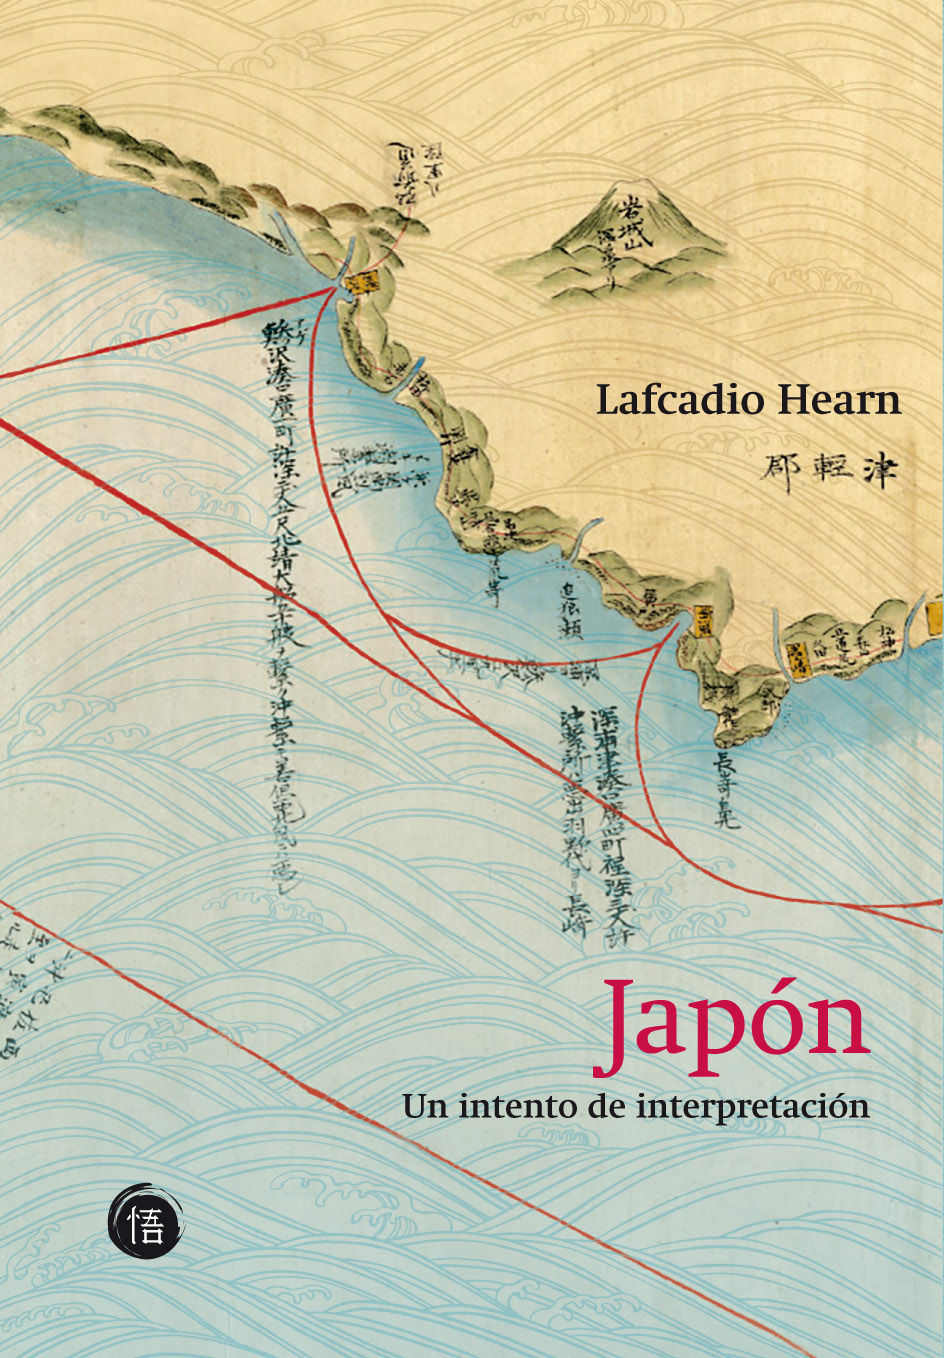 Japón: Un intento de reinterpretación (Español language, 2009, Satori)